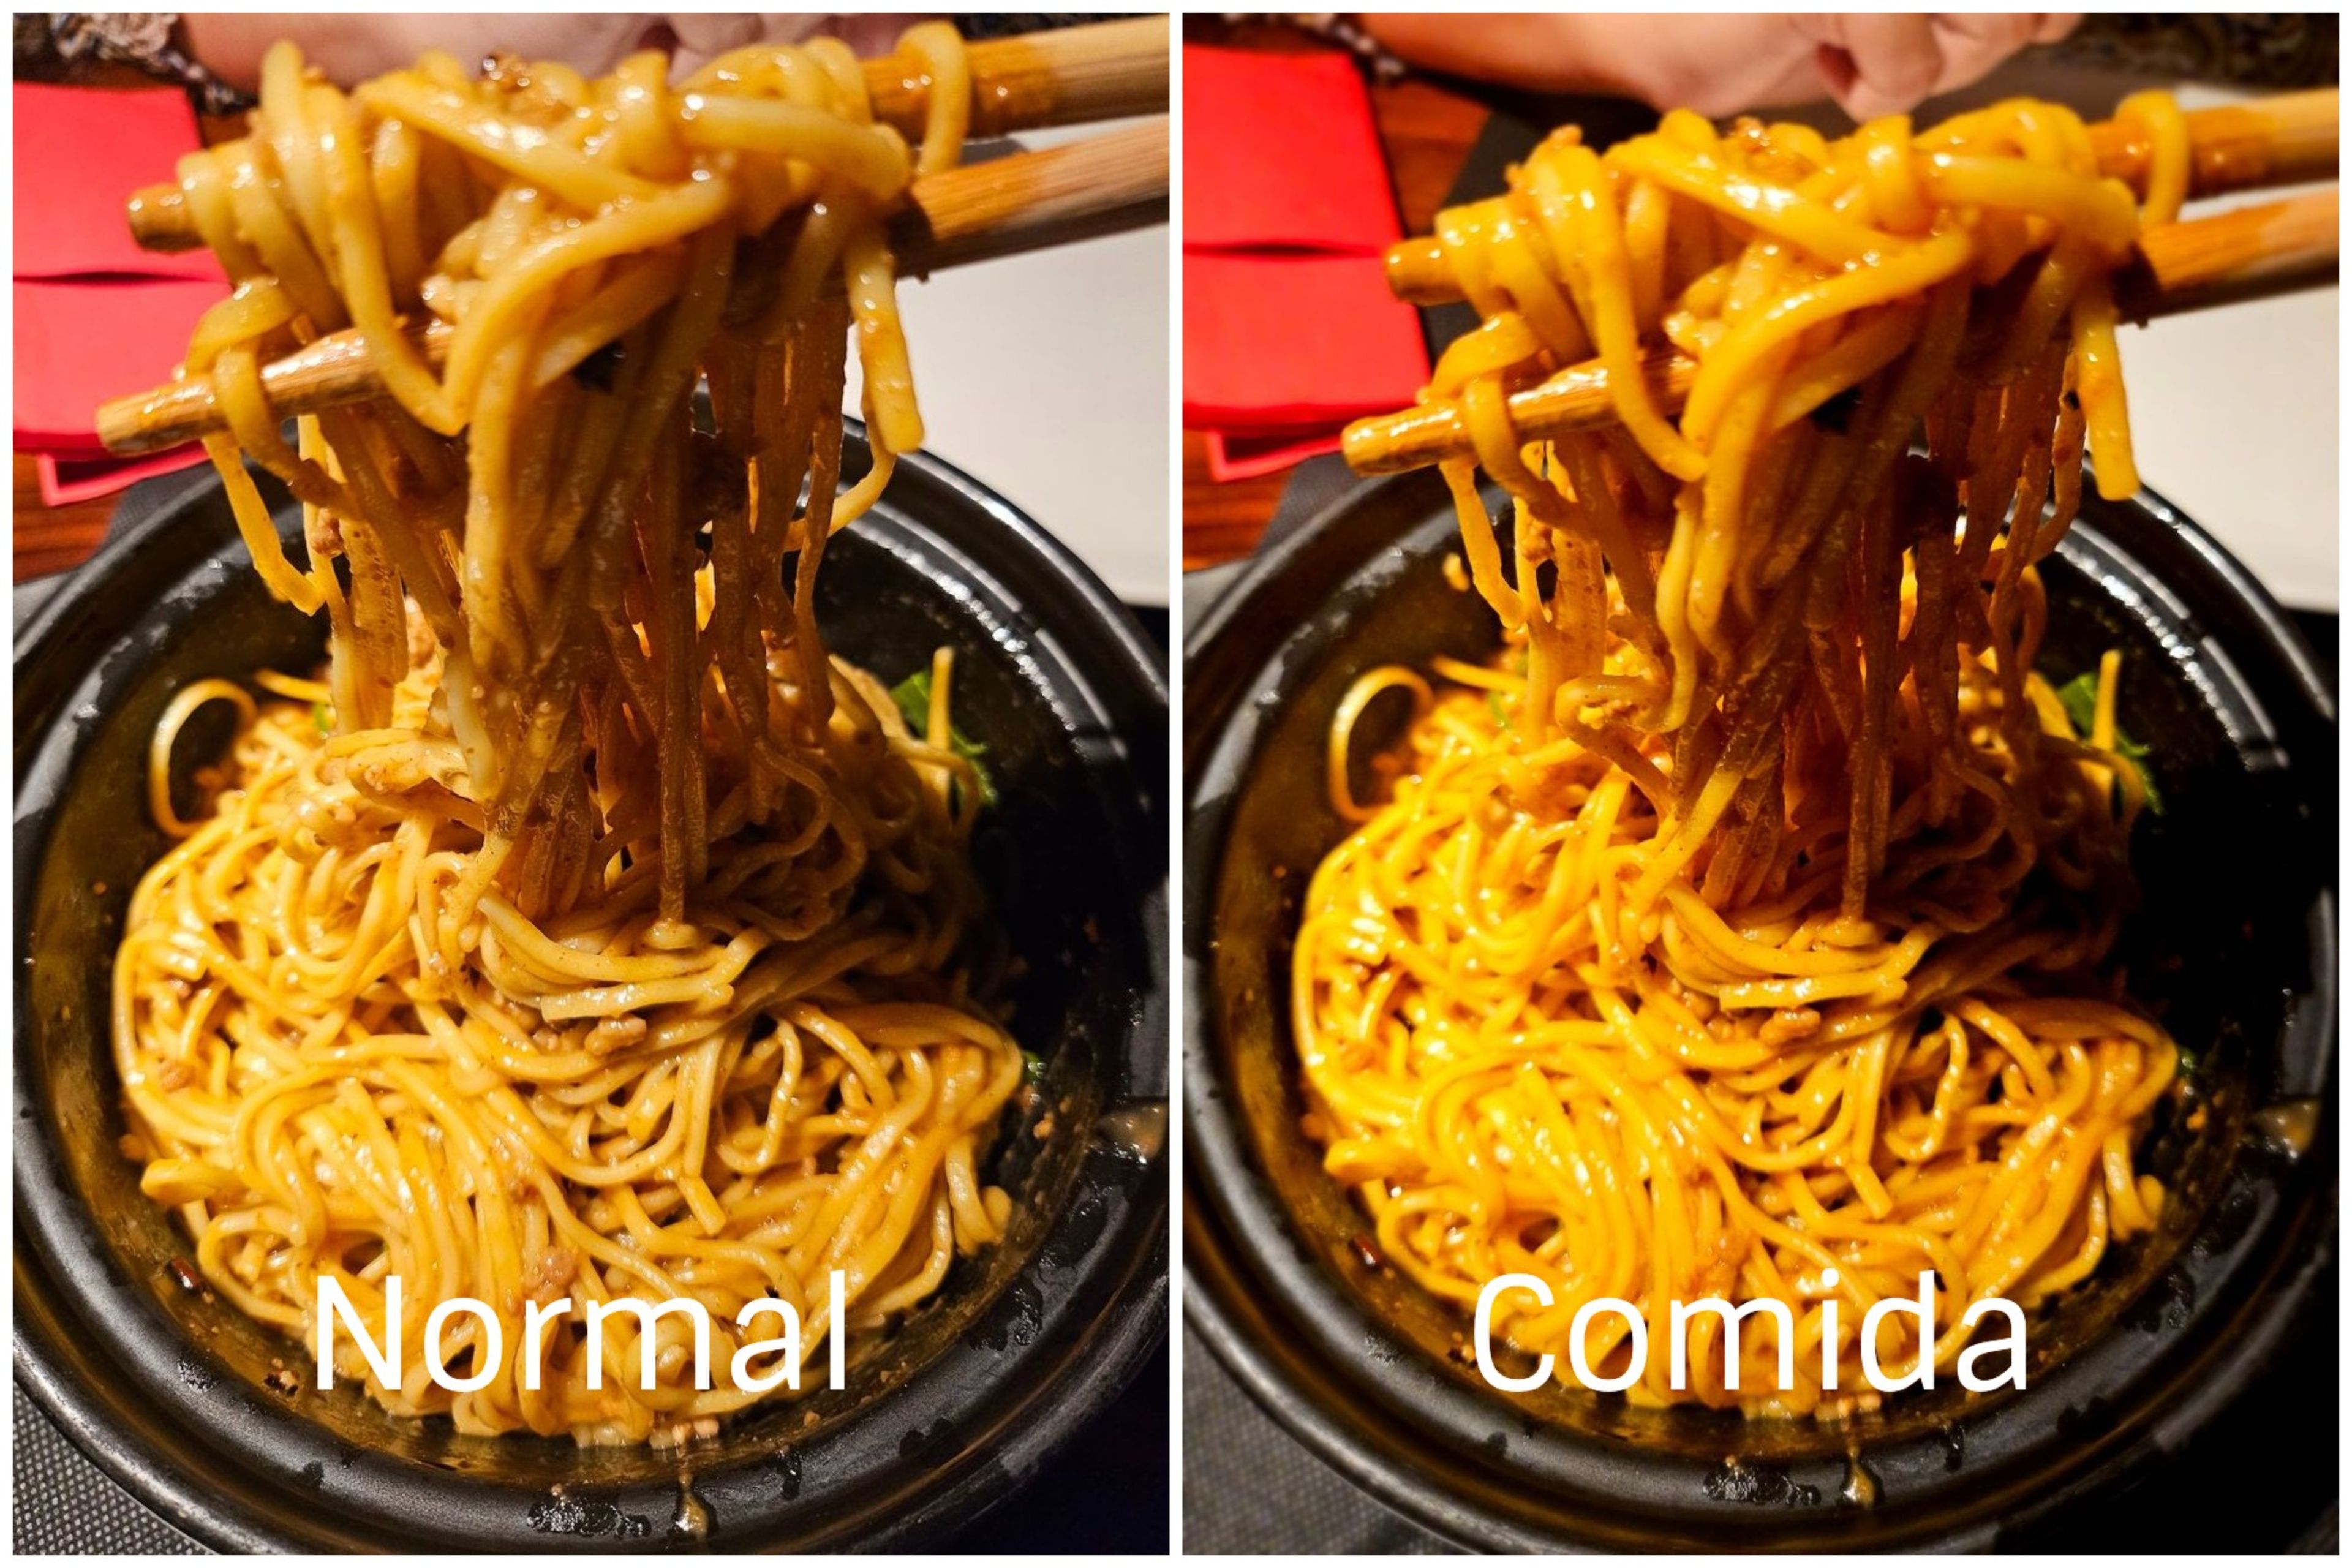 Aunque la foto de la derecha puede parecer más suculenta, en realidad el plato se parecía mucho más al modo normal: eran tallarines chinos, no pasta con yemas de huevo.